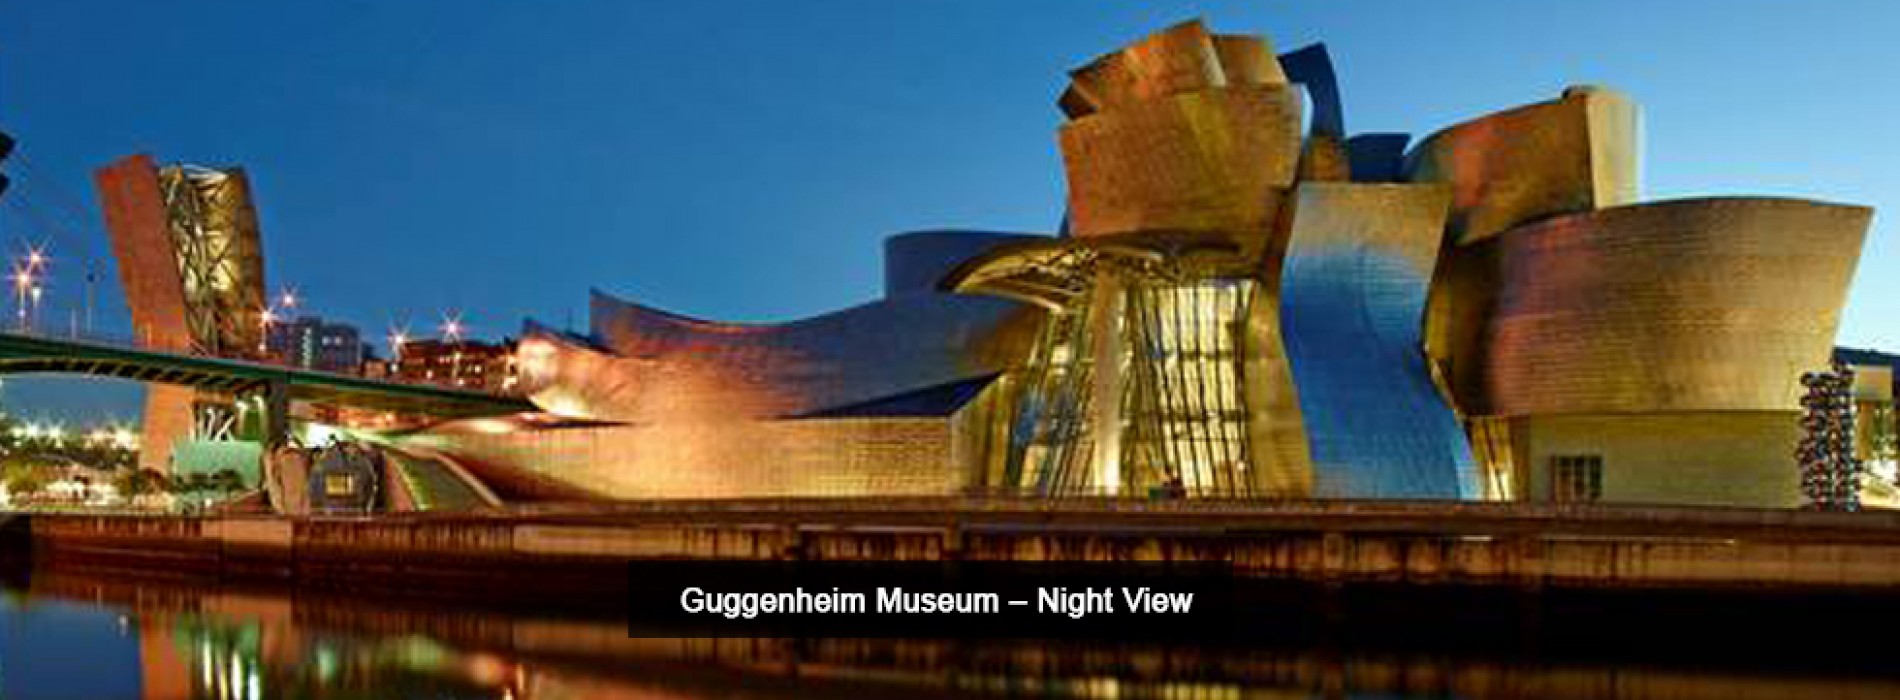 Spain celebrates 20th anniversary of Guggenheim Museum, Bilbao